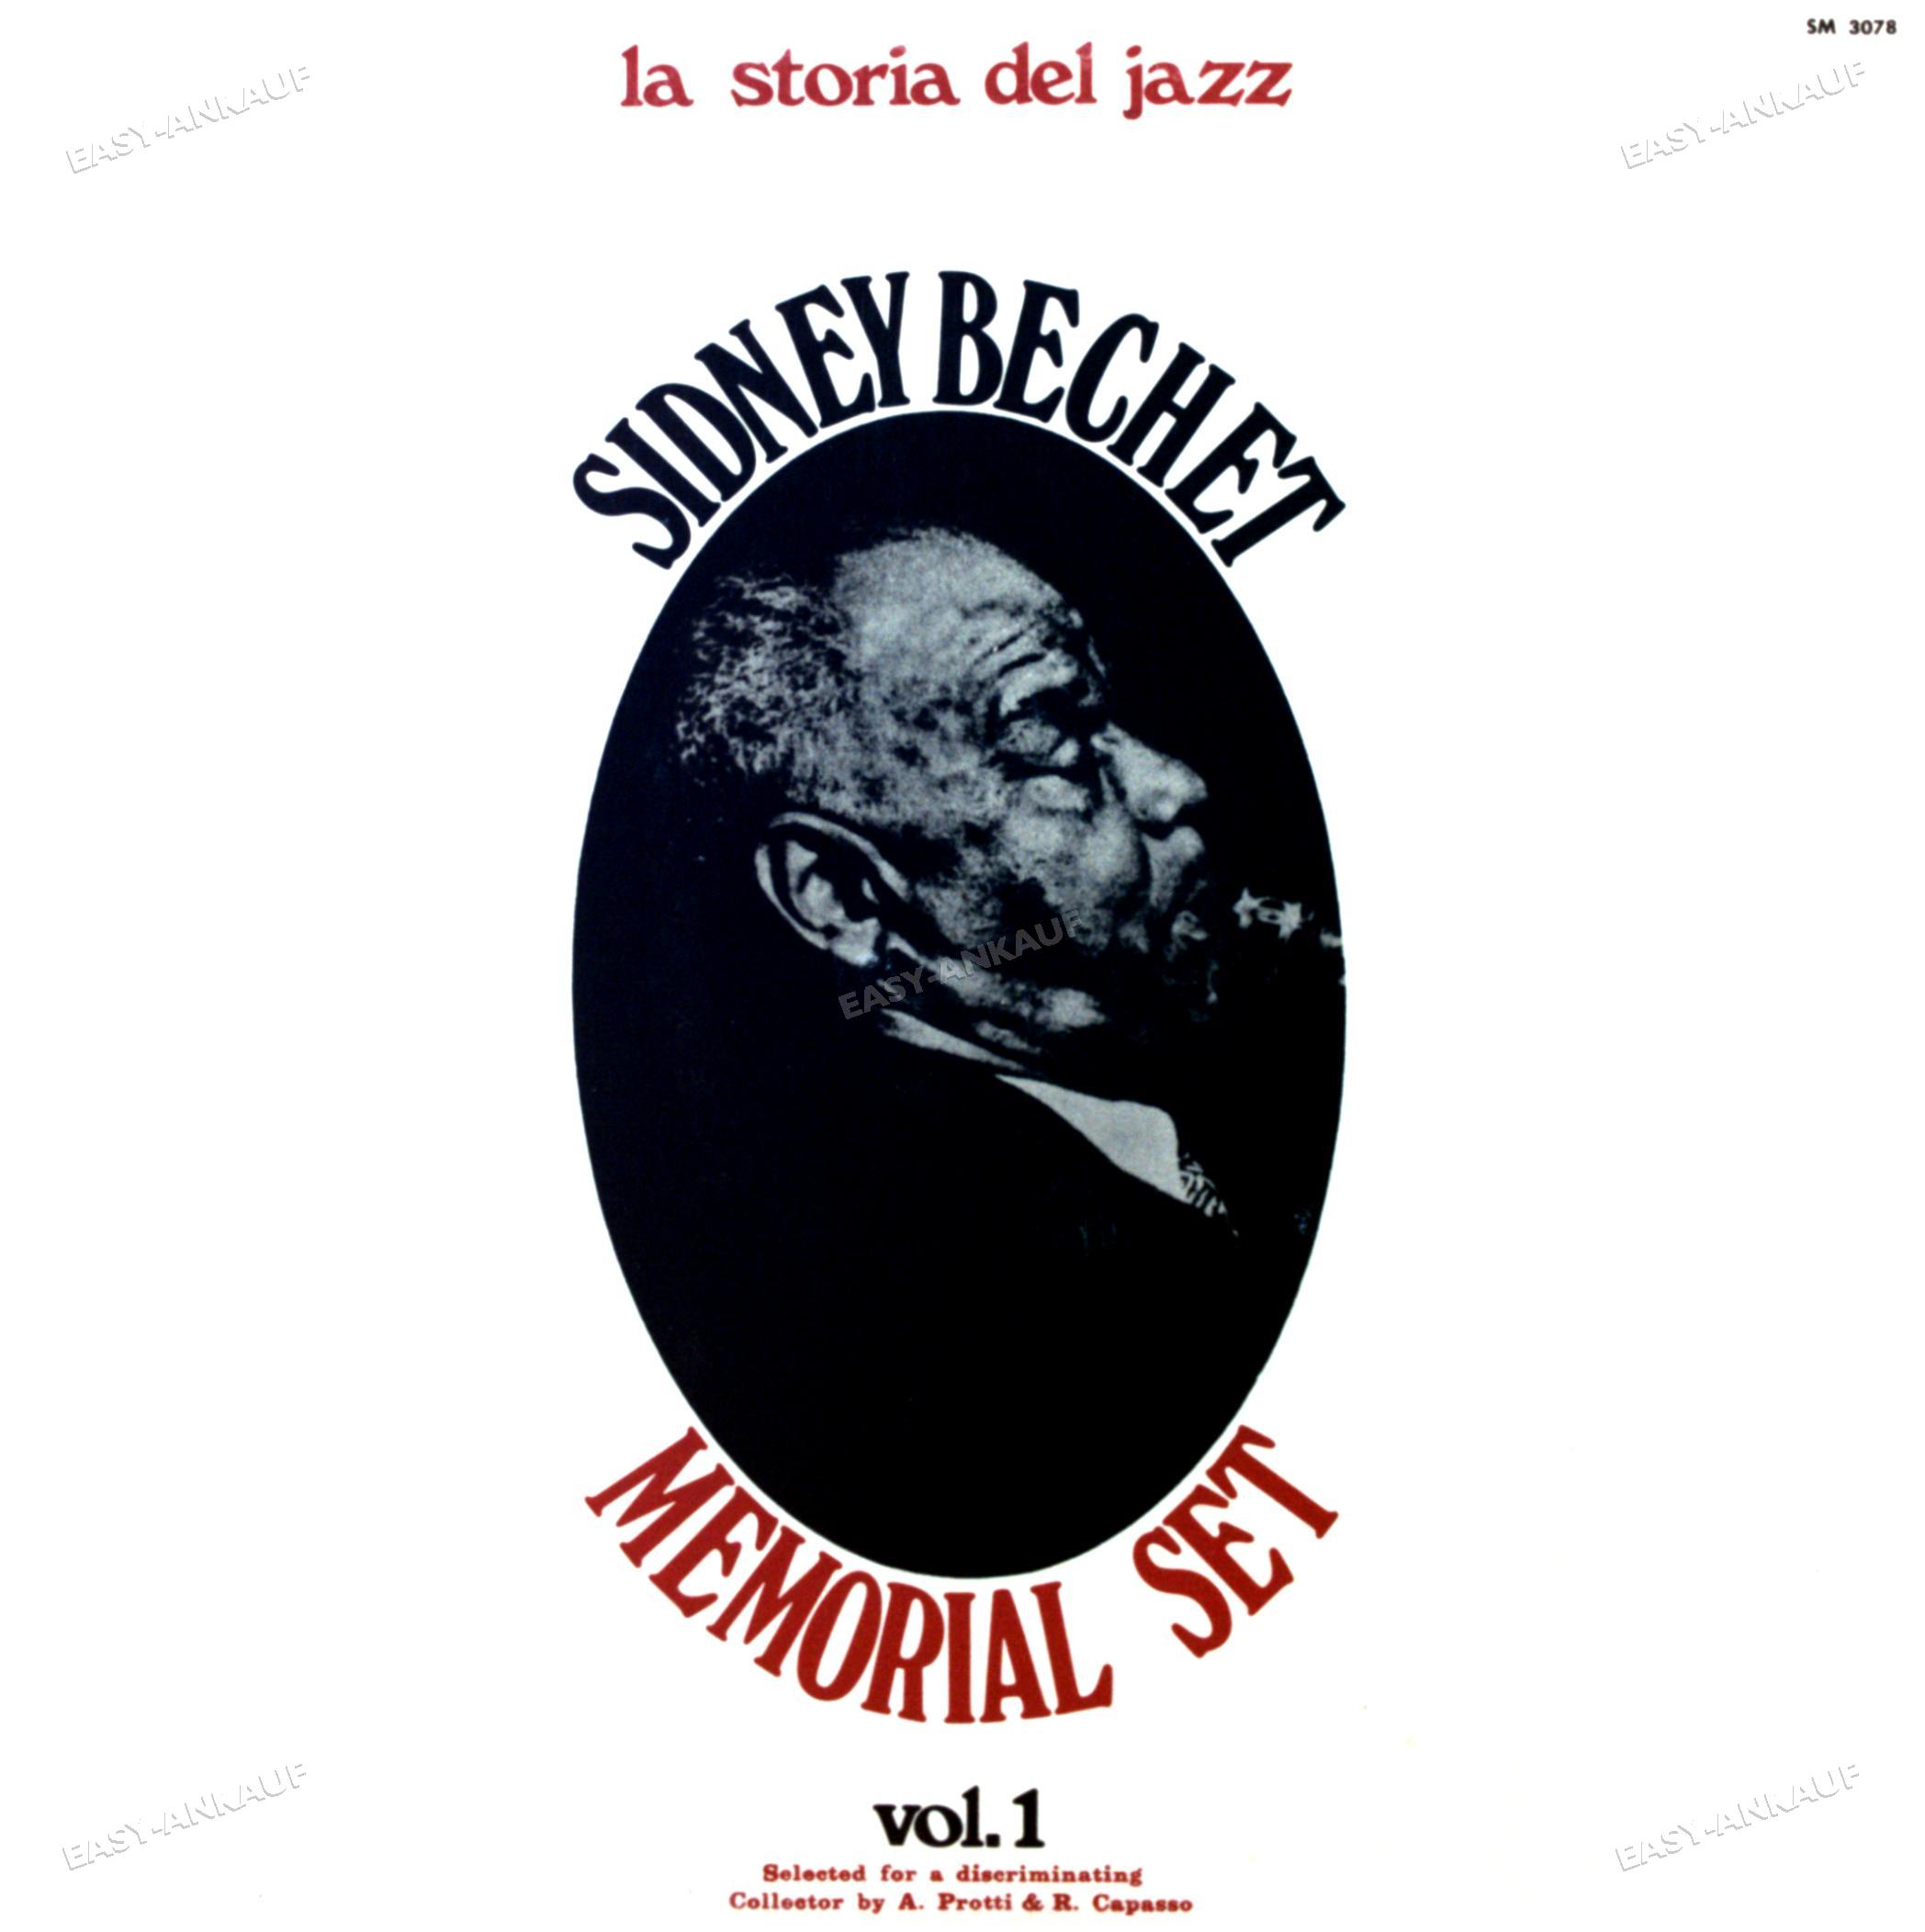 Sidney Bechet - Memorial Set Vol. 1 LP 1971 (SEHR GUTER ZUSTAND +/SEHR GUTER ZUSTAND) '* - Bild 1 von 1